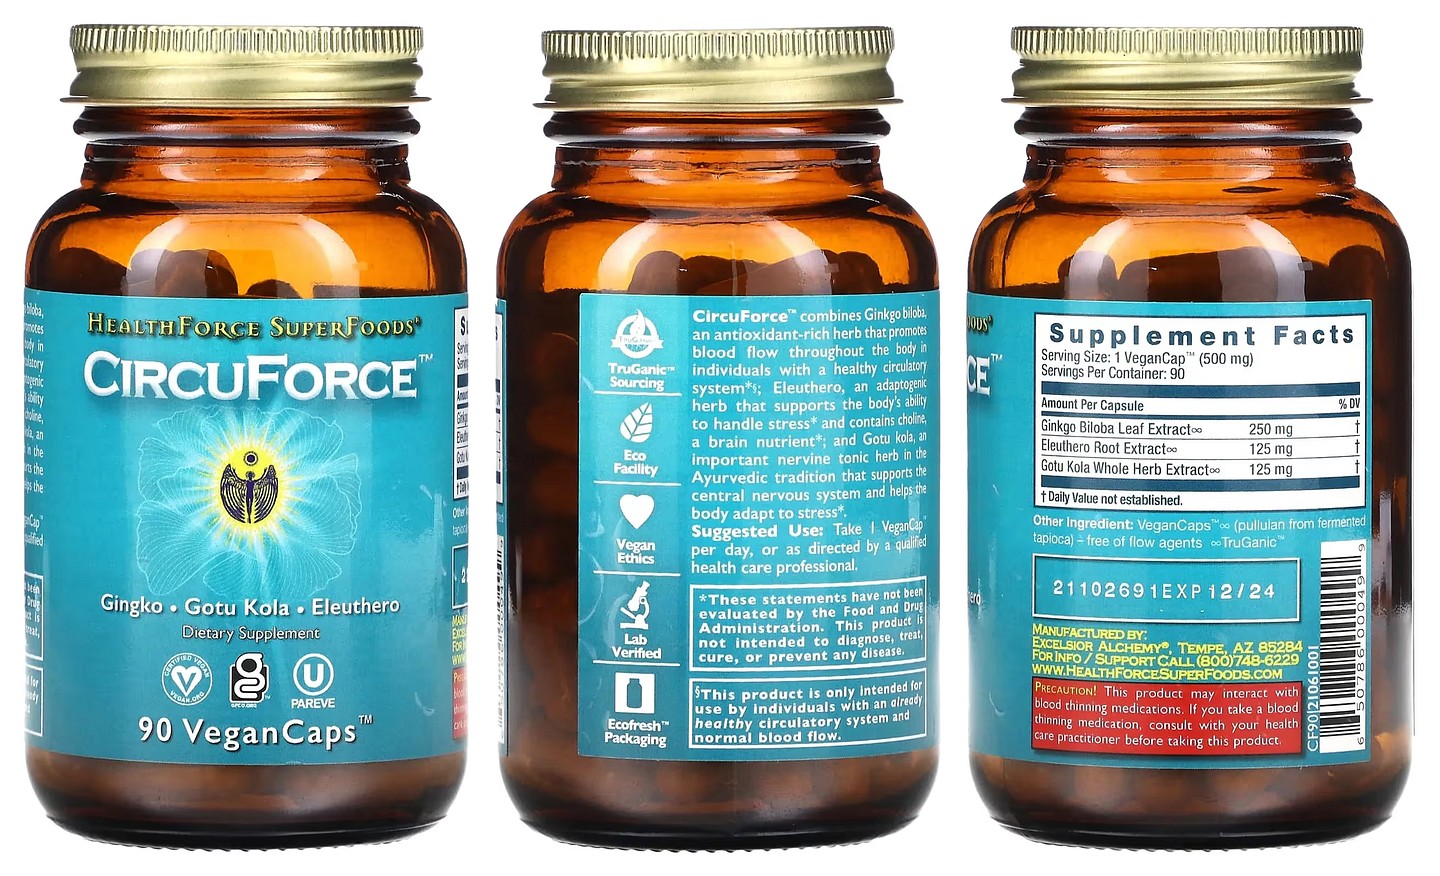 HealthForce Superfoods, CircuForce packaging